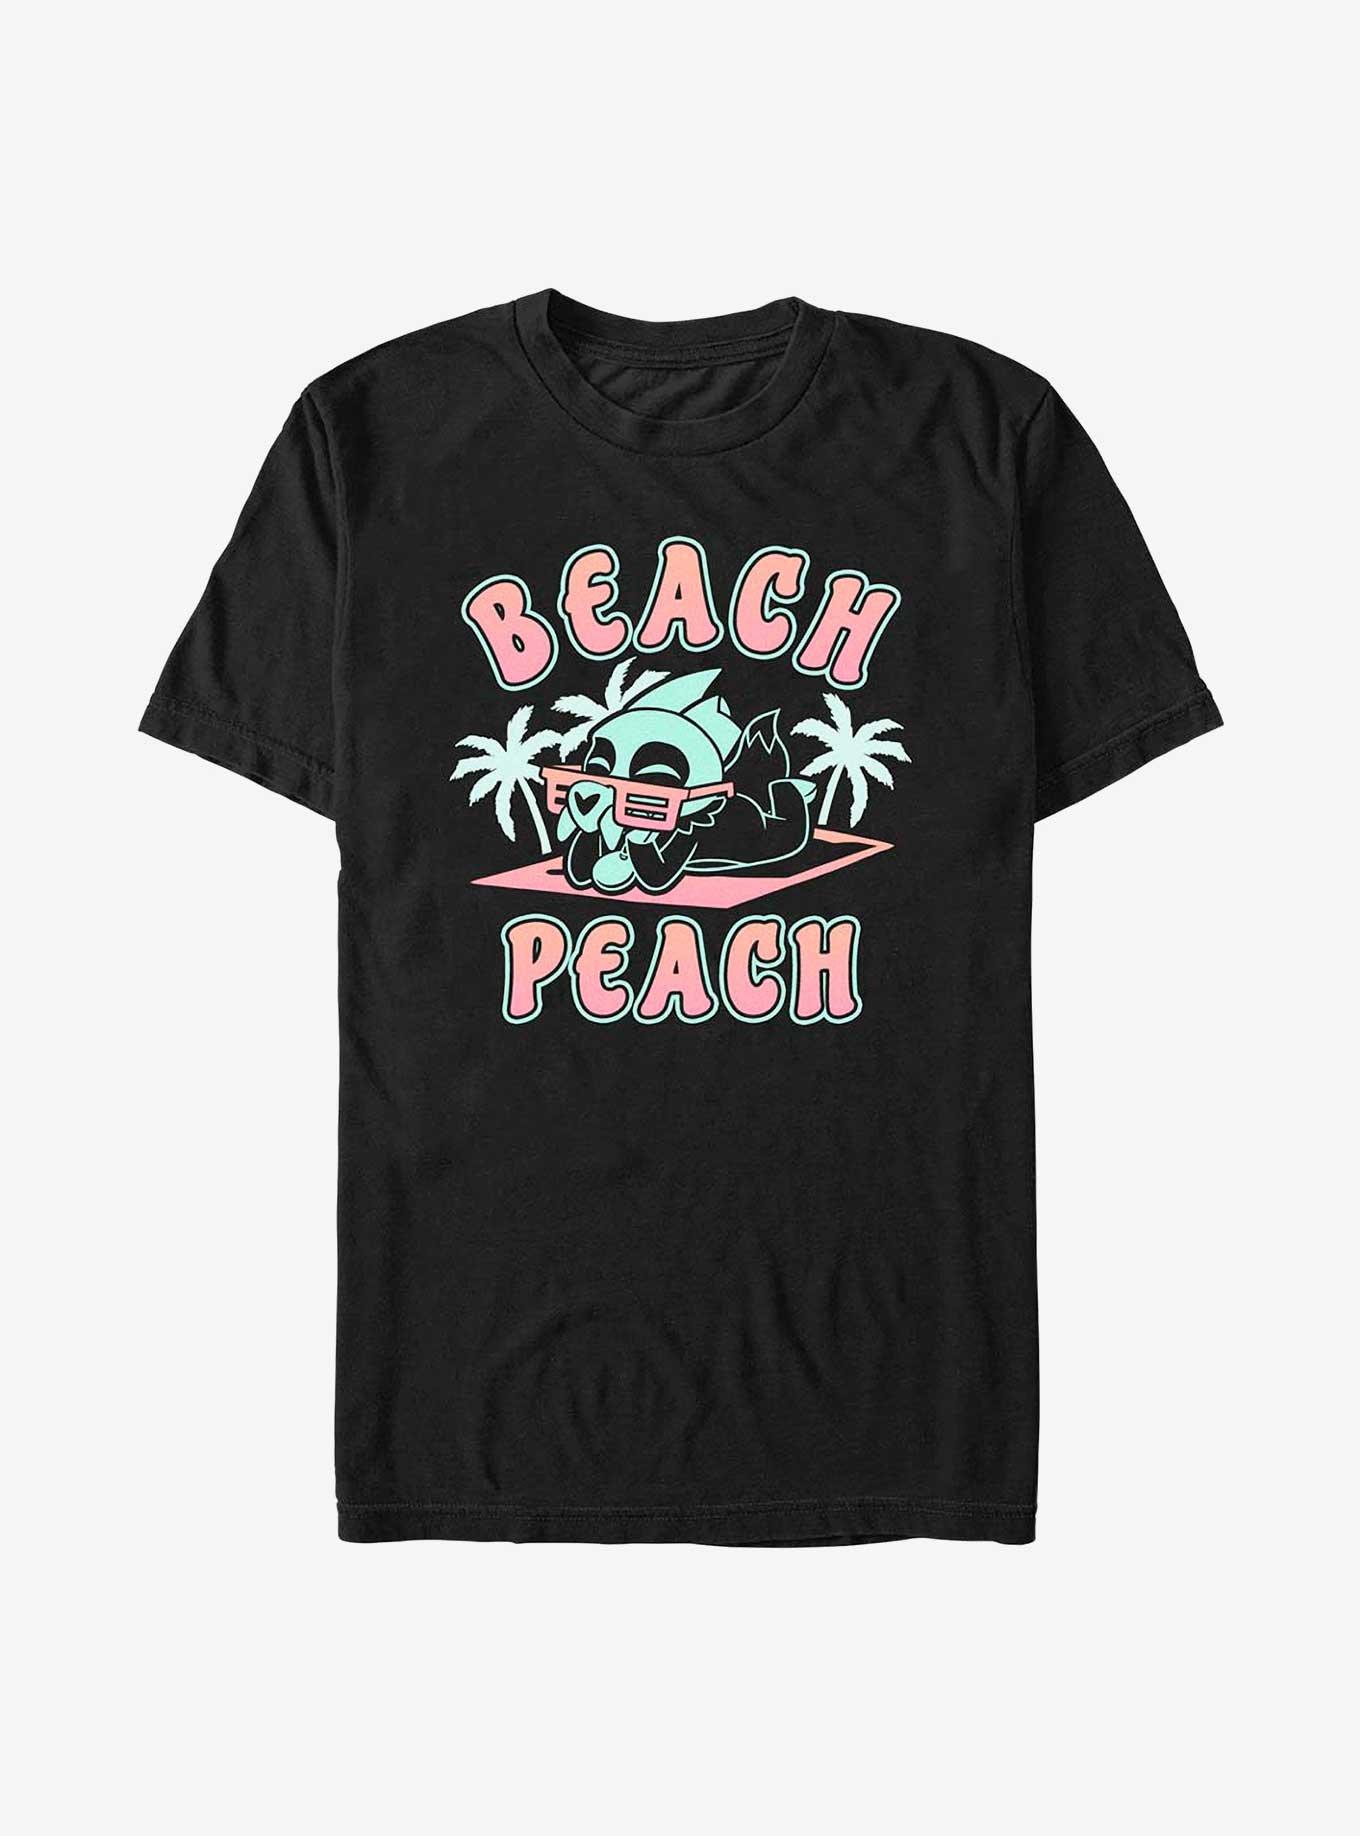 Disney The Owl House King Beach Peach T-Shirt, BLACK, hi-res